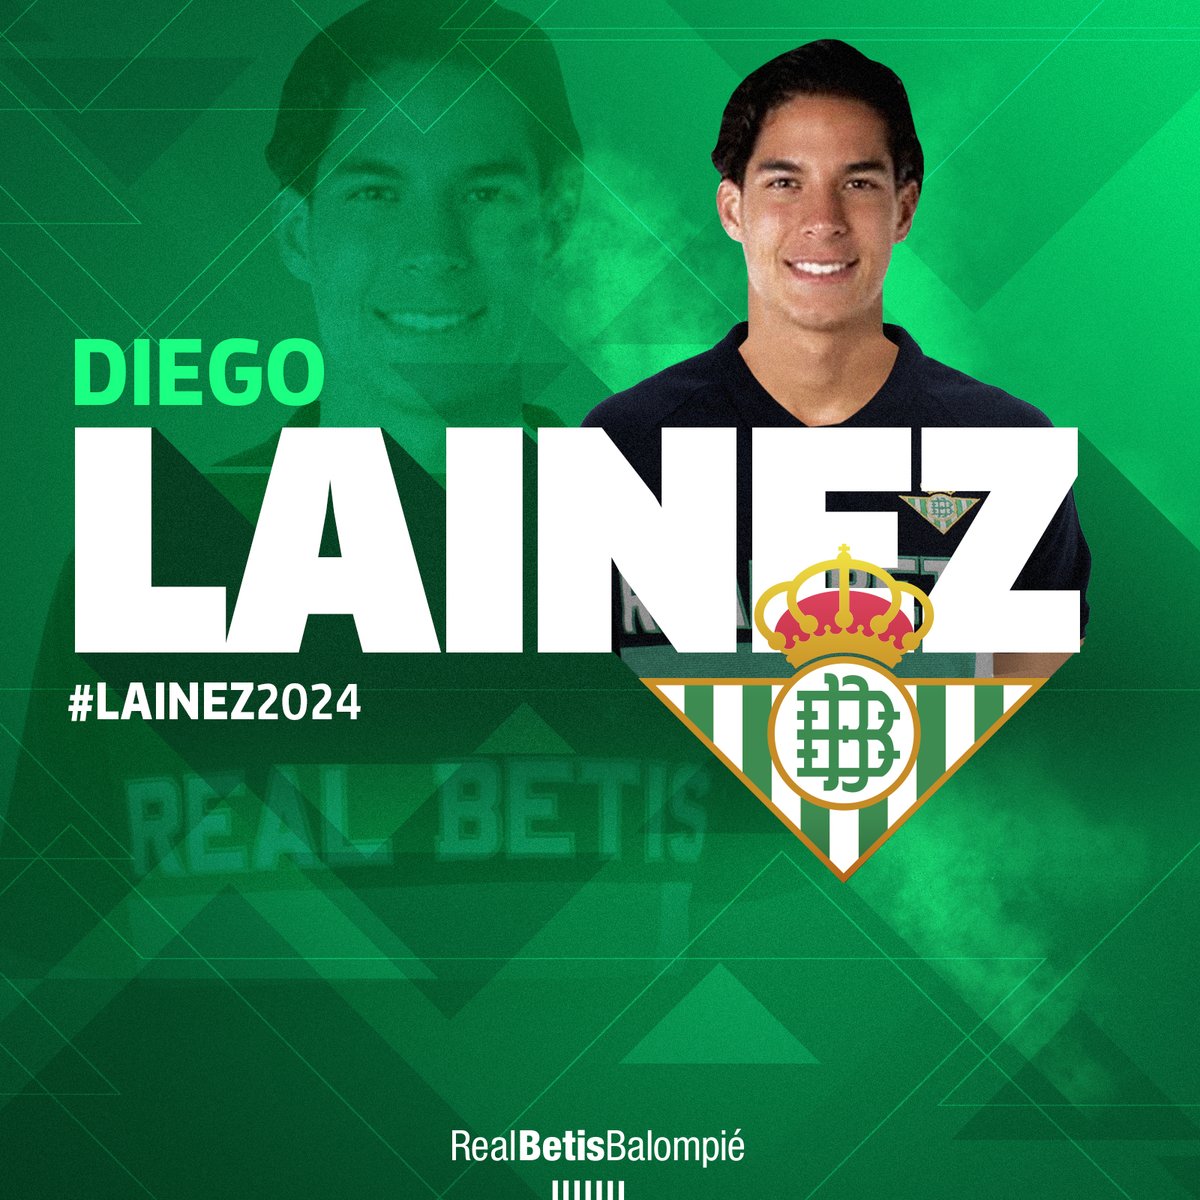 レアル ベティス バロンピエ A Twitter 公式発表 レアル ベティス は Clubamerica からメキシコ代表mf ディエゴ ライネス を獲得することで合意しました Lainez24